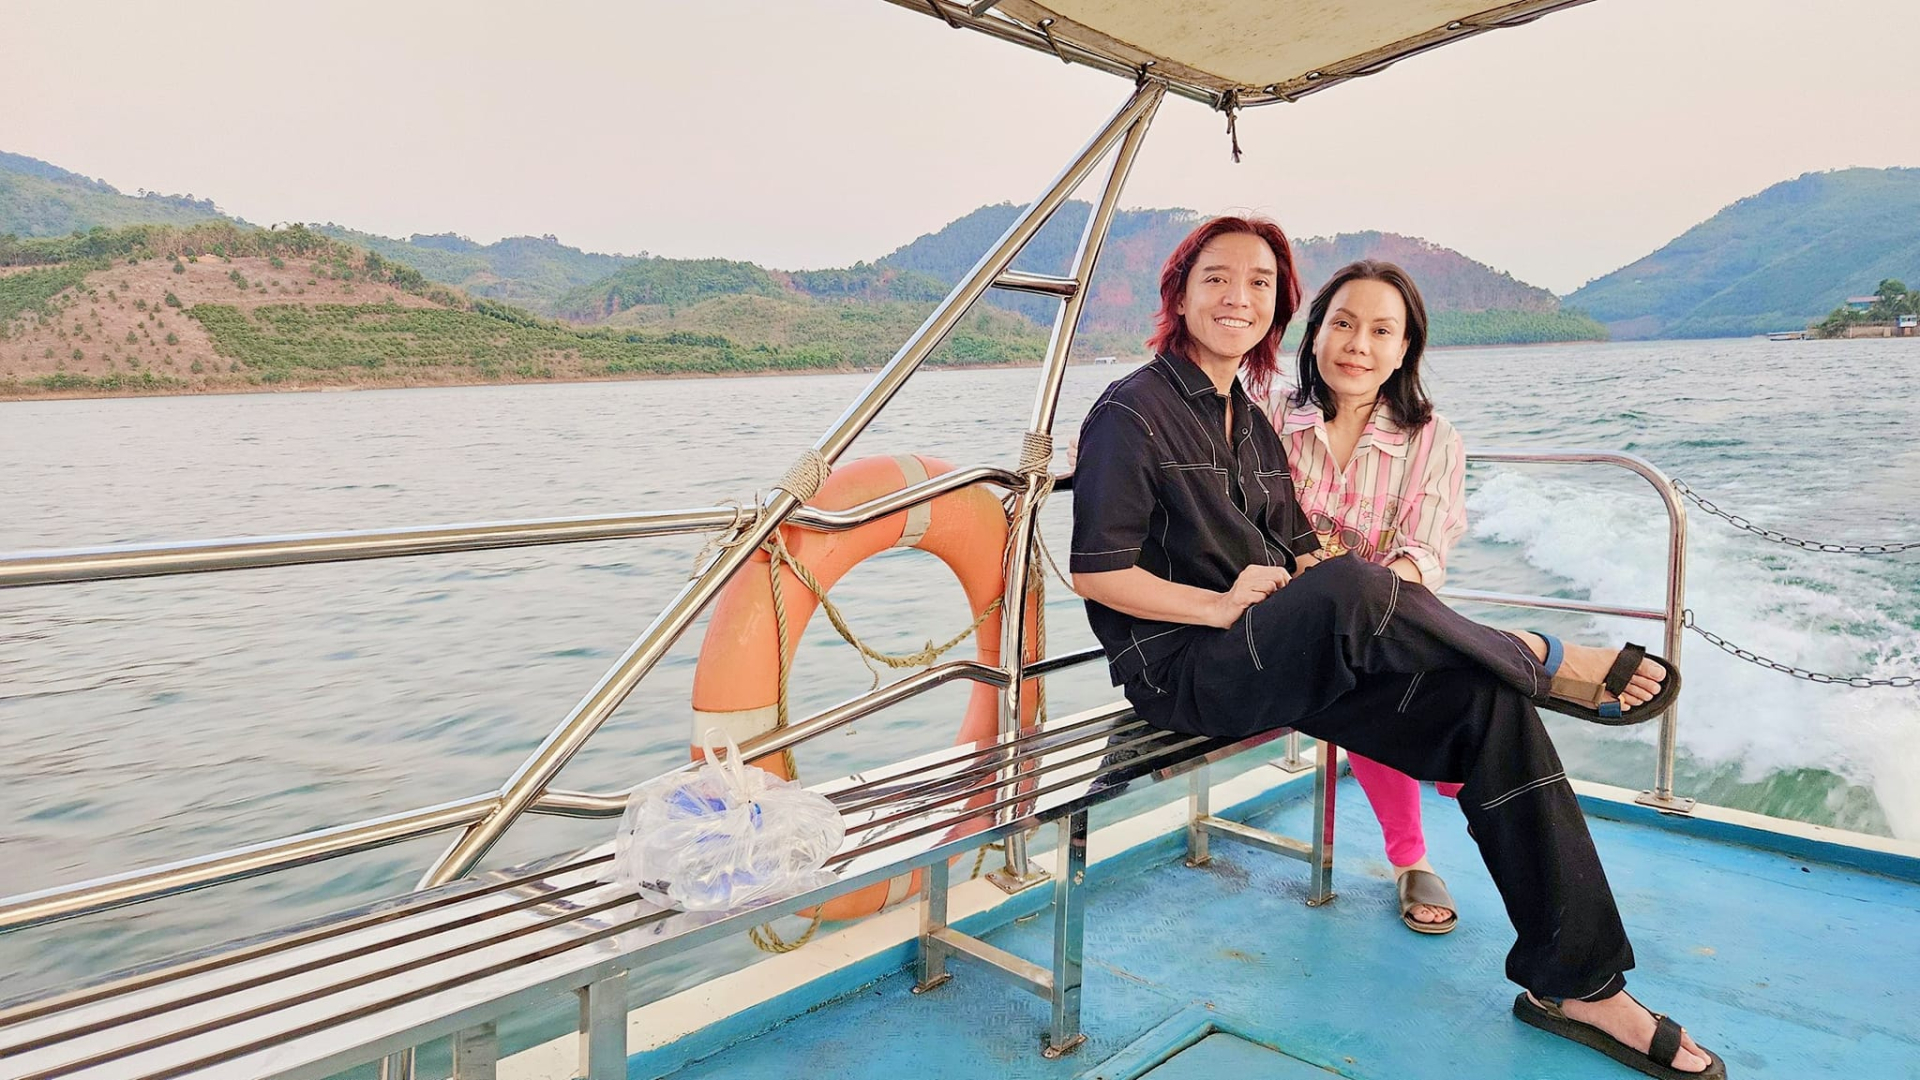 Ở tuổi U50, Việt Hương có cuộc sống hạnh phúc, thoải mái với ông xã và con cái